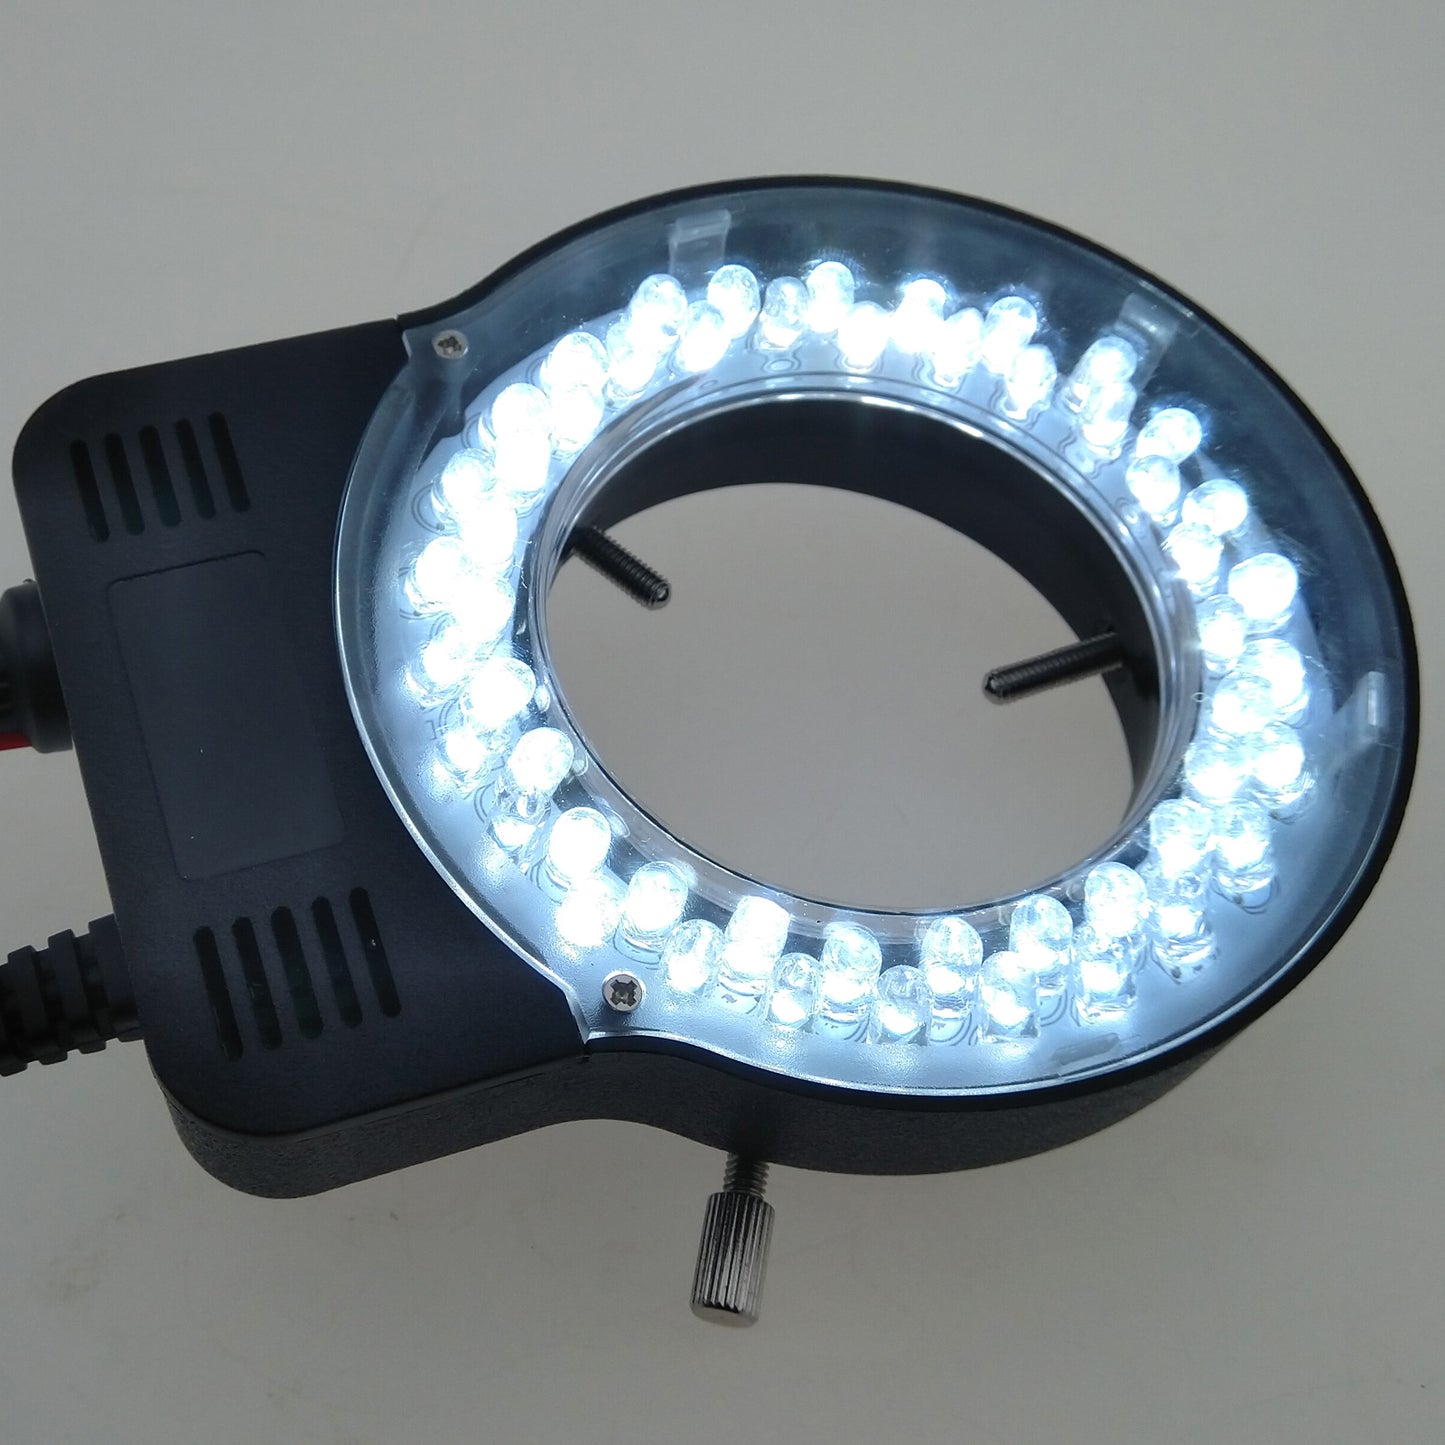 52 LED Ring Light, 5V USB Power